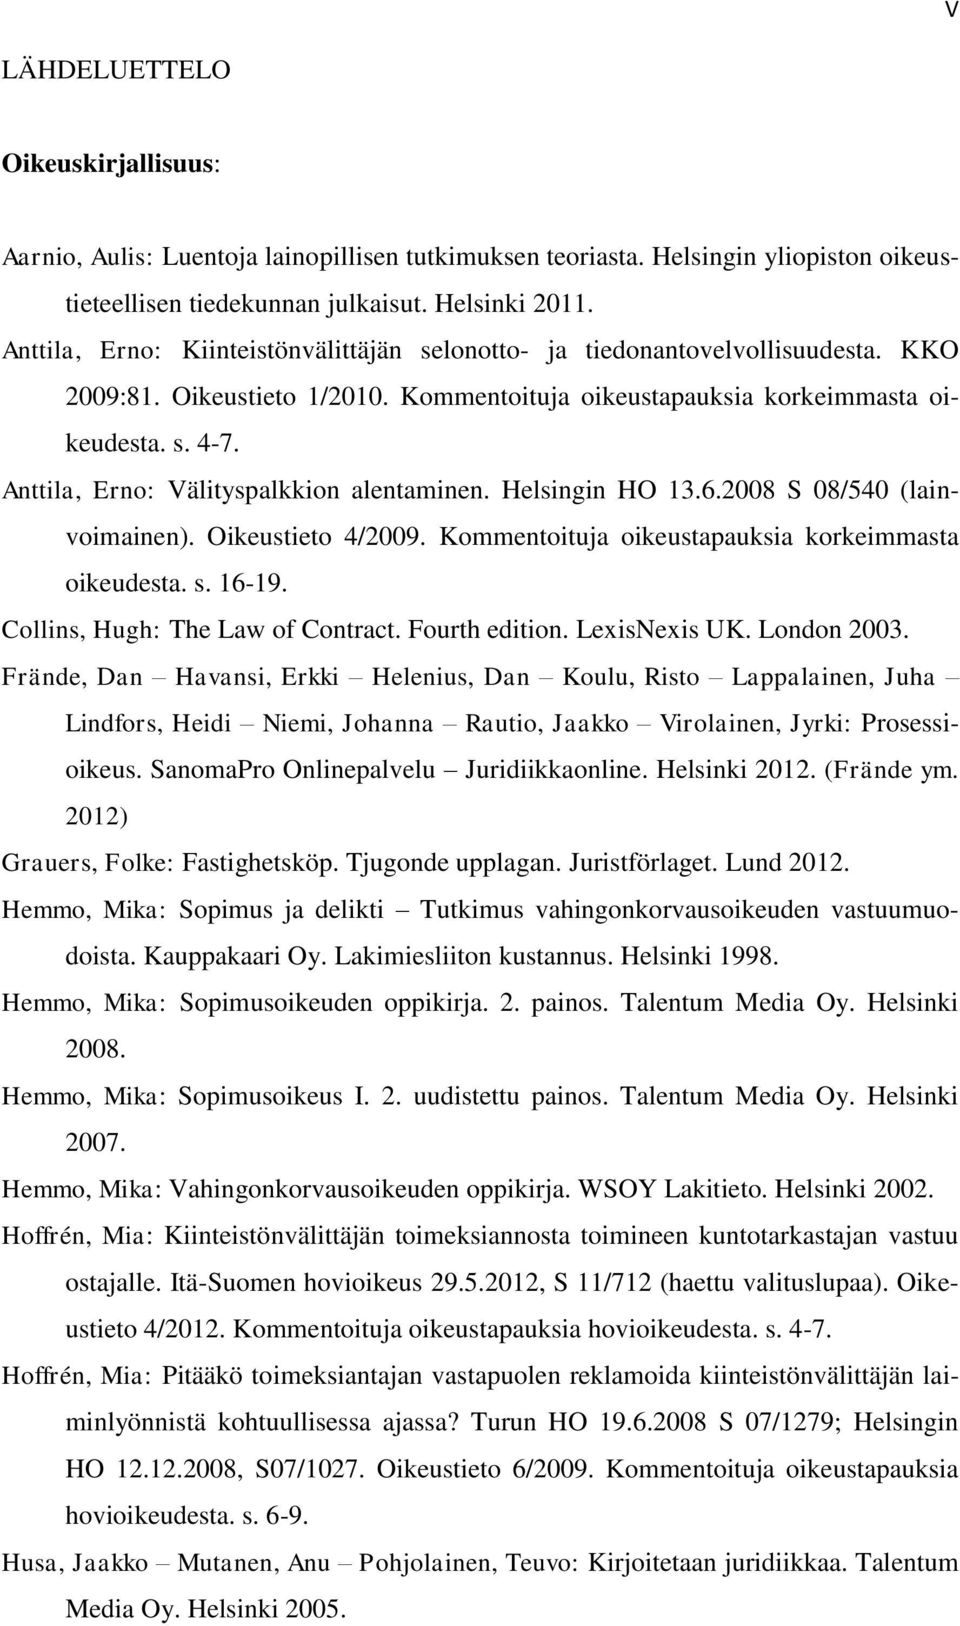 Anttila, Erno: Välityspalkkion alentaminen. Helsingin HO 13.6.2008 S 08/540 (lainvoimainen). Oikeustieto 4/2009. Kommentoituja oikeustapauksia korkeimmasta oikeudesta. s. 16-19.